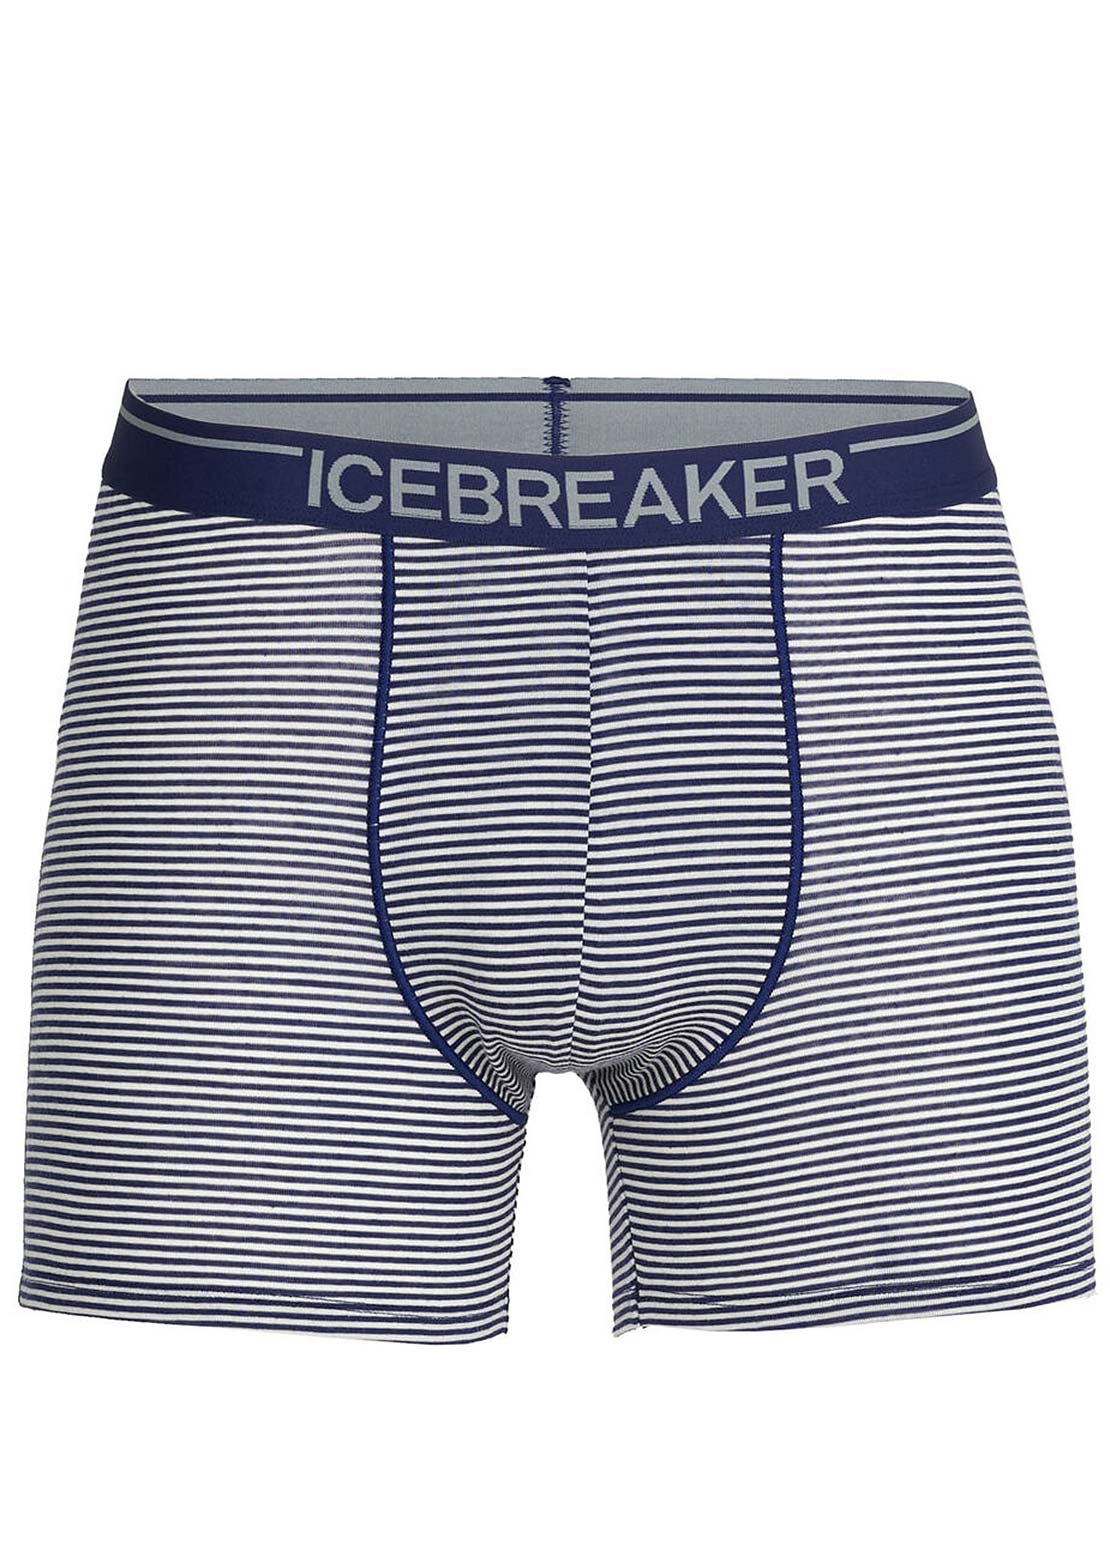 Icebreaker Men&#39;s Anatomica Boxers Royal Navy/Snow Stripe